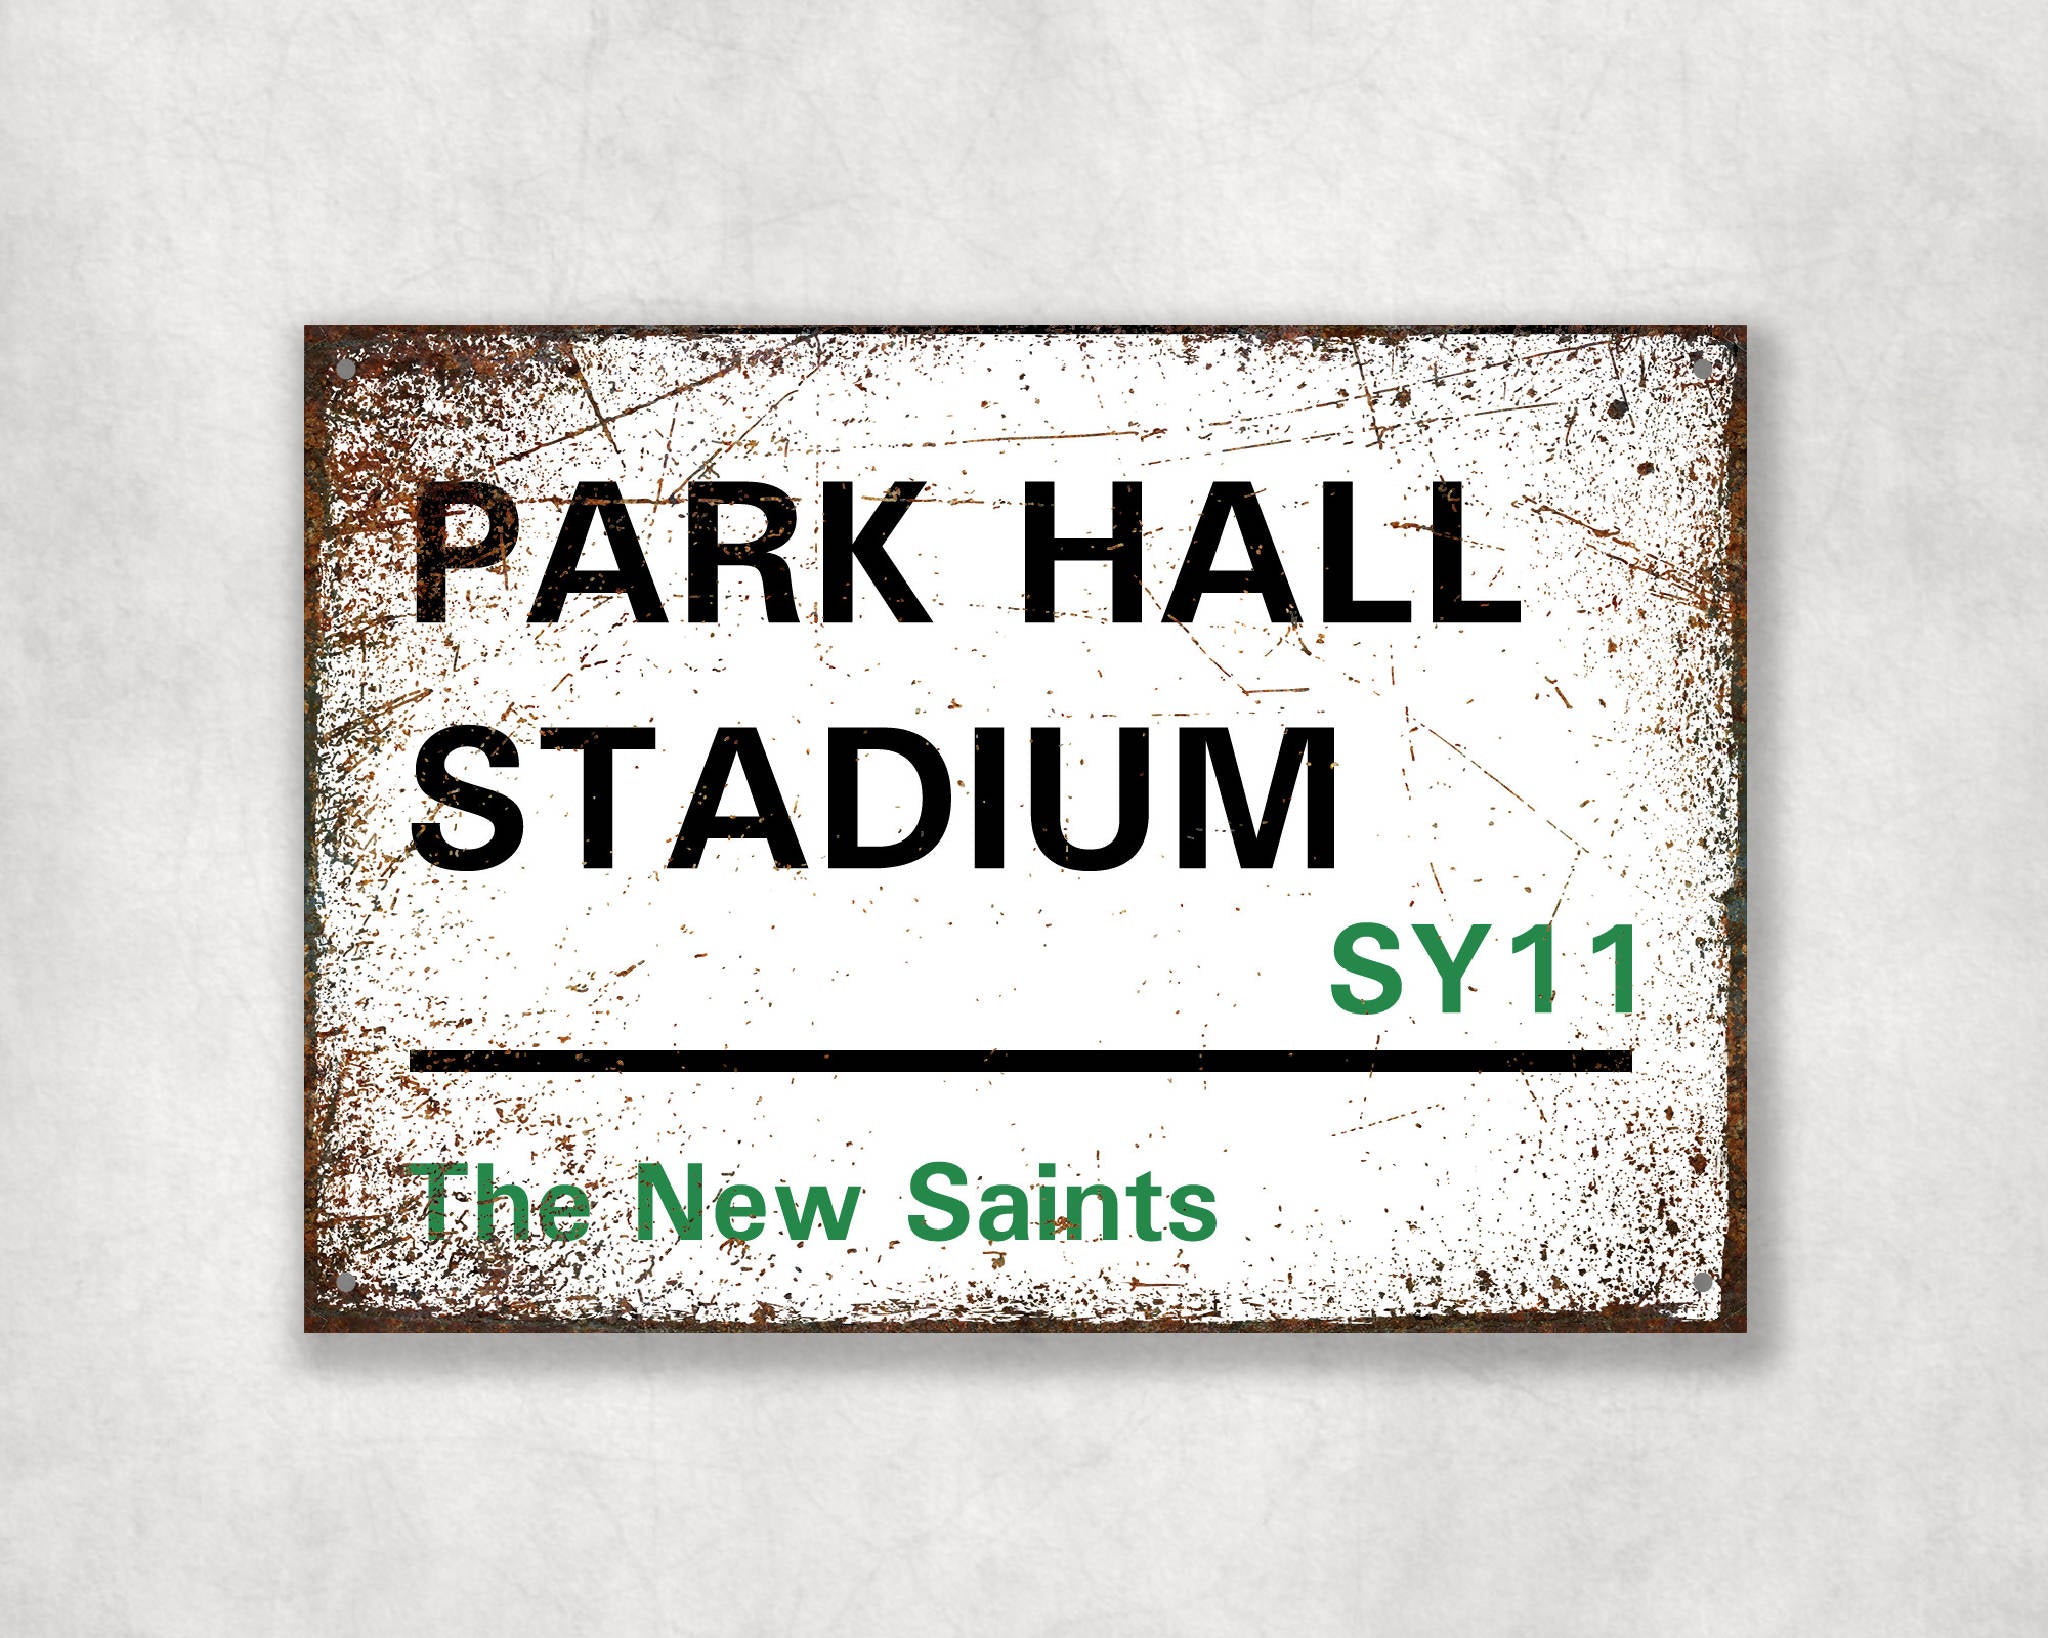 Park Hall Stadium - The New Saints FC aluminium printed metal street sign - gift, keepsake, football gift